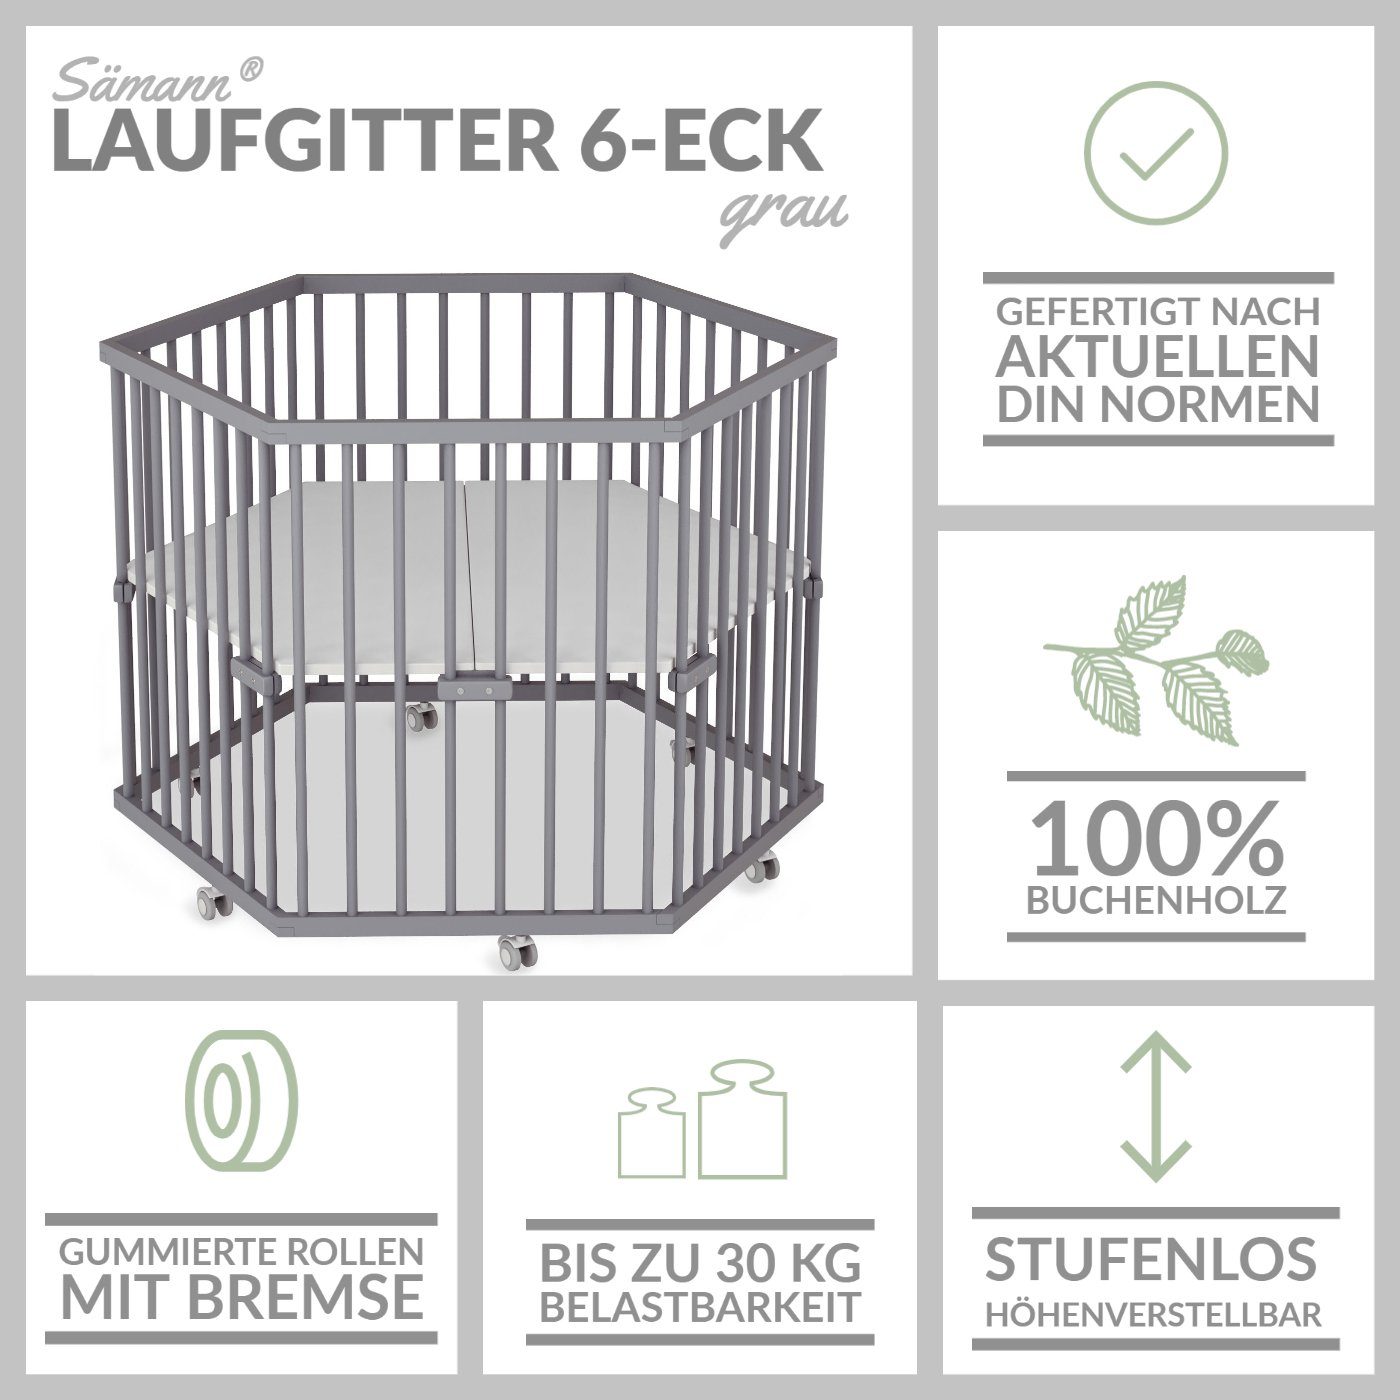 Sämann Laufgitter 6-eckig mit Made Germany, Matratze, grau nach Norm höhenverstellung, DIN gefertigt in stufenlos weiß